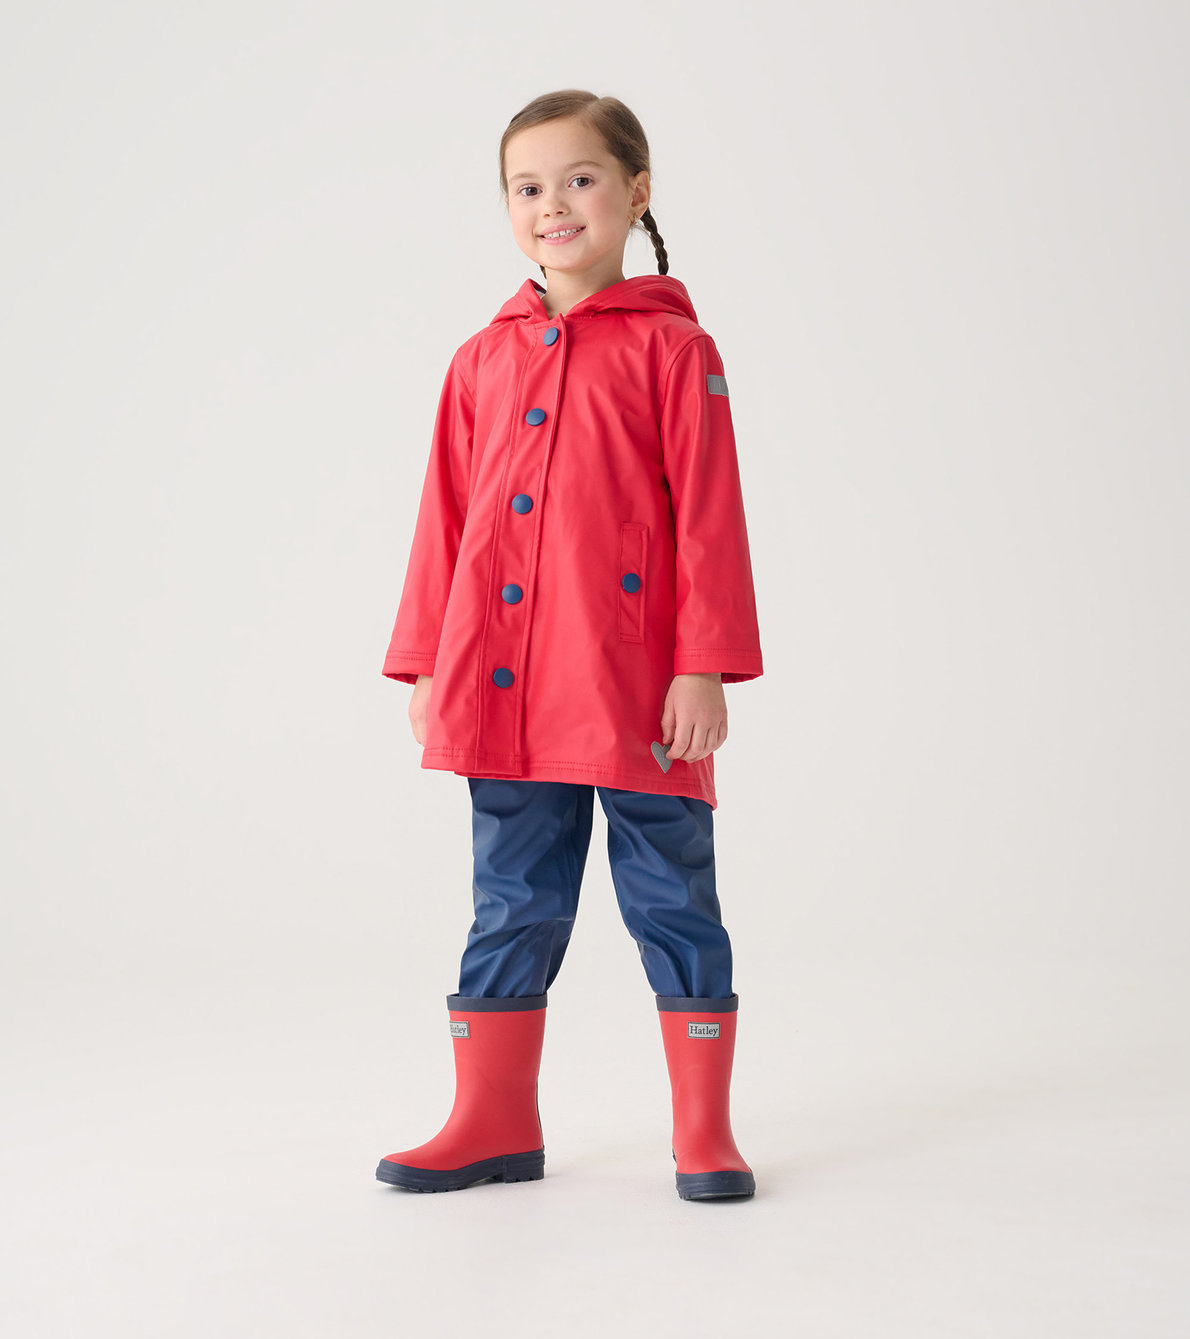 Agrandir l'image de Bottes de pluie au fini mat pour enfant – Rouge avec bordures bleu marine